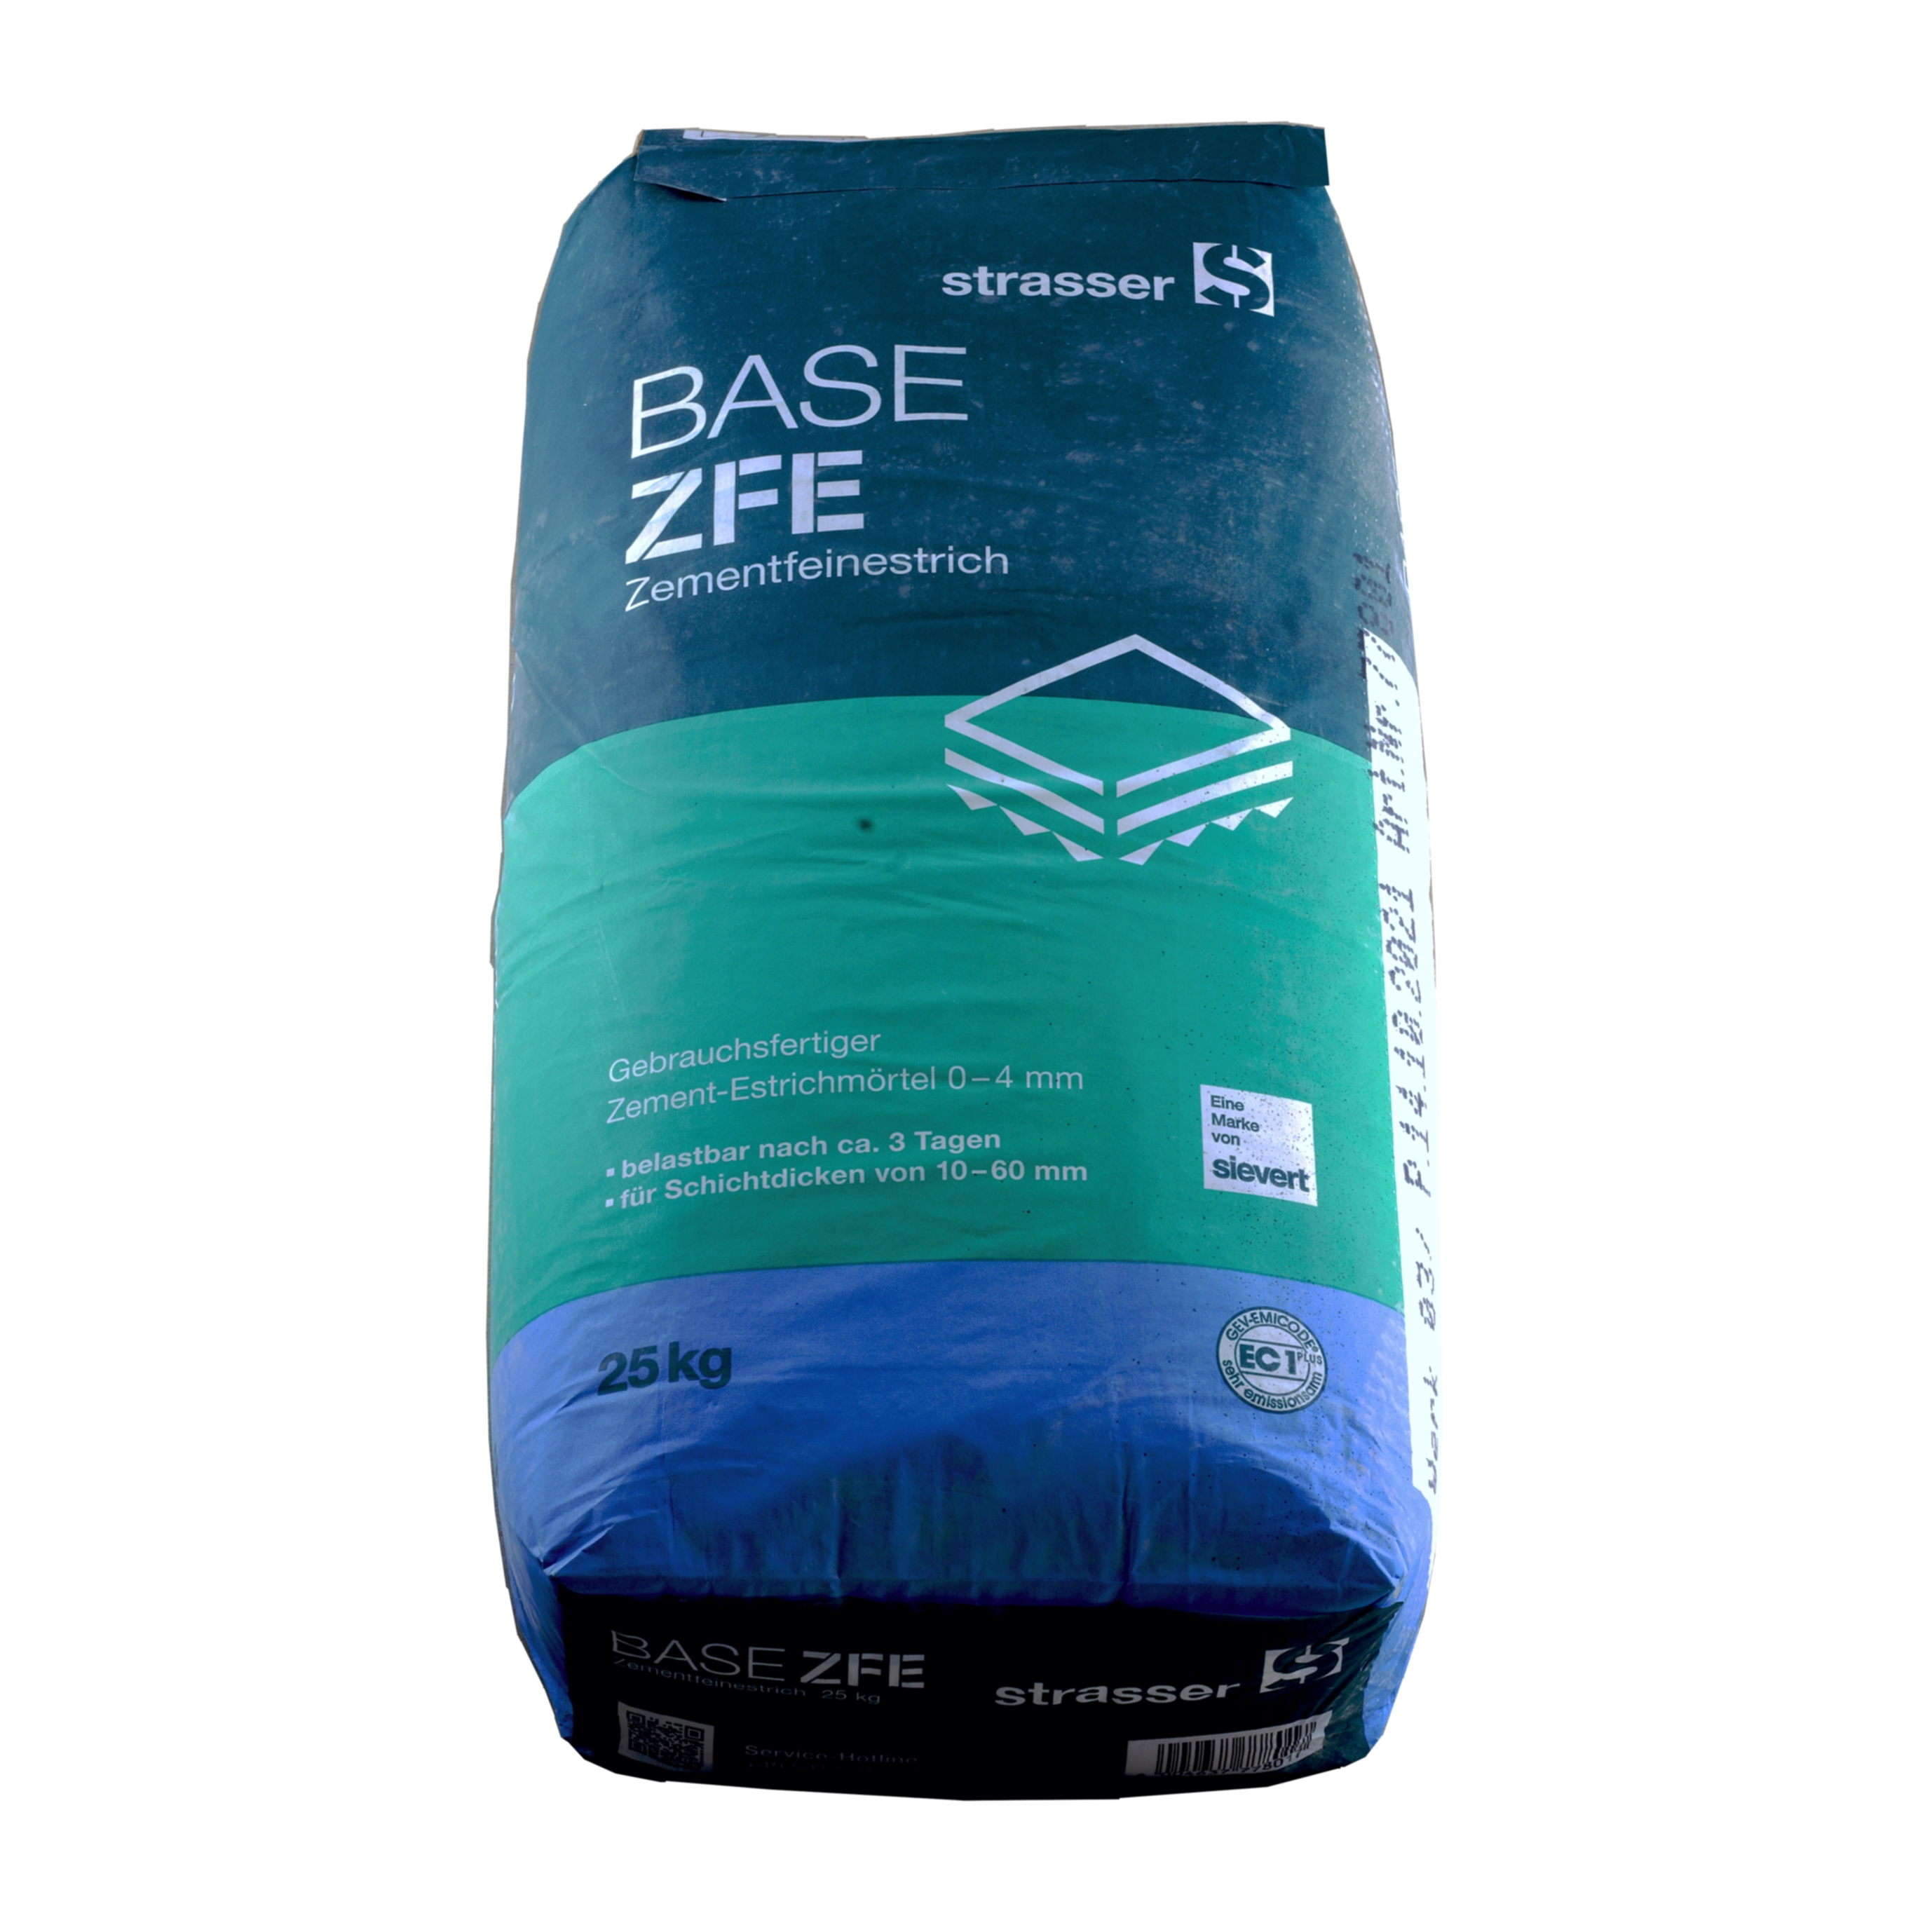 Strasser Base ZFE Zementfeinestrich  25 kg